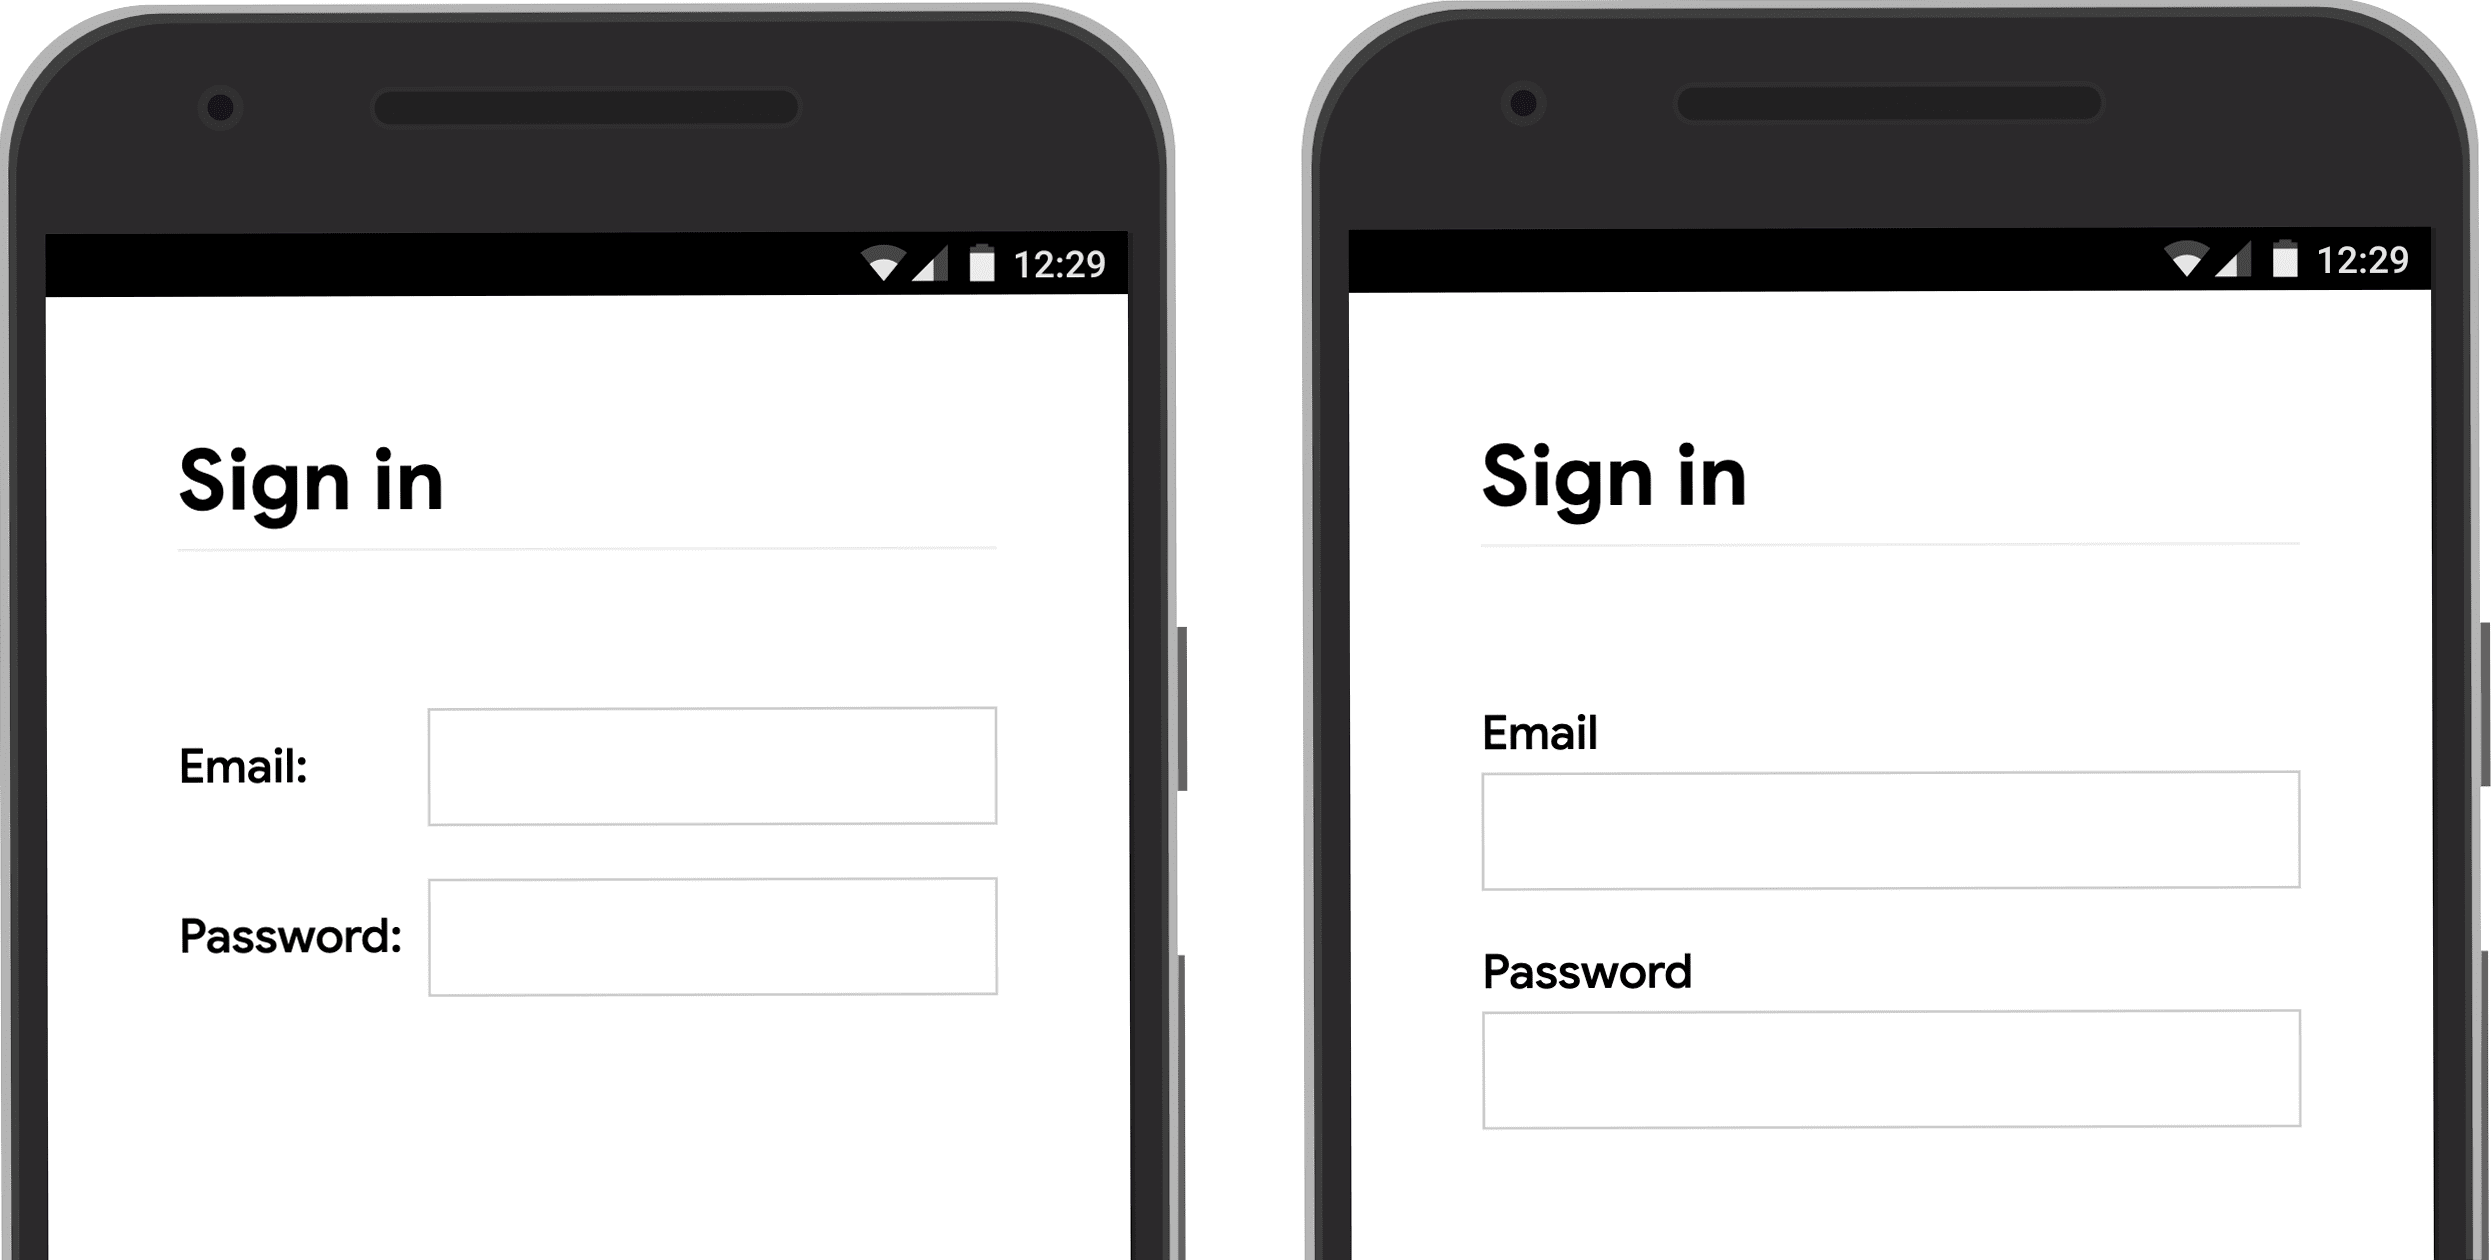 मोबाइल पर फ़ॉर्म इनपुट लेबल की जगह दिखाने वाला स्क्रीनशॉट: इनपुट के बगल में और इनपुट के ऊपर.